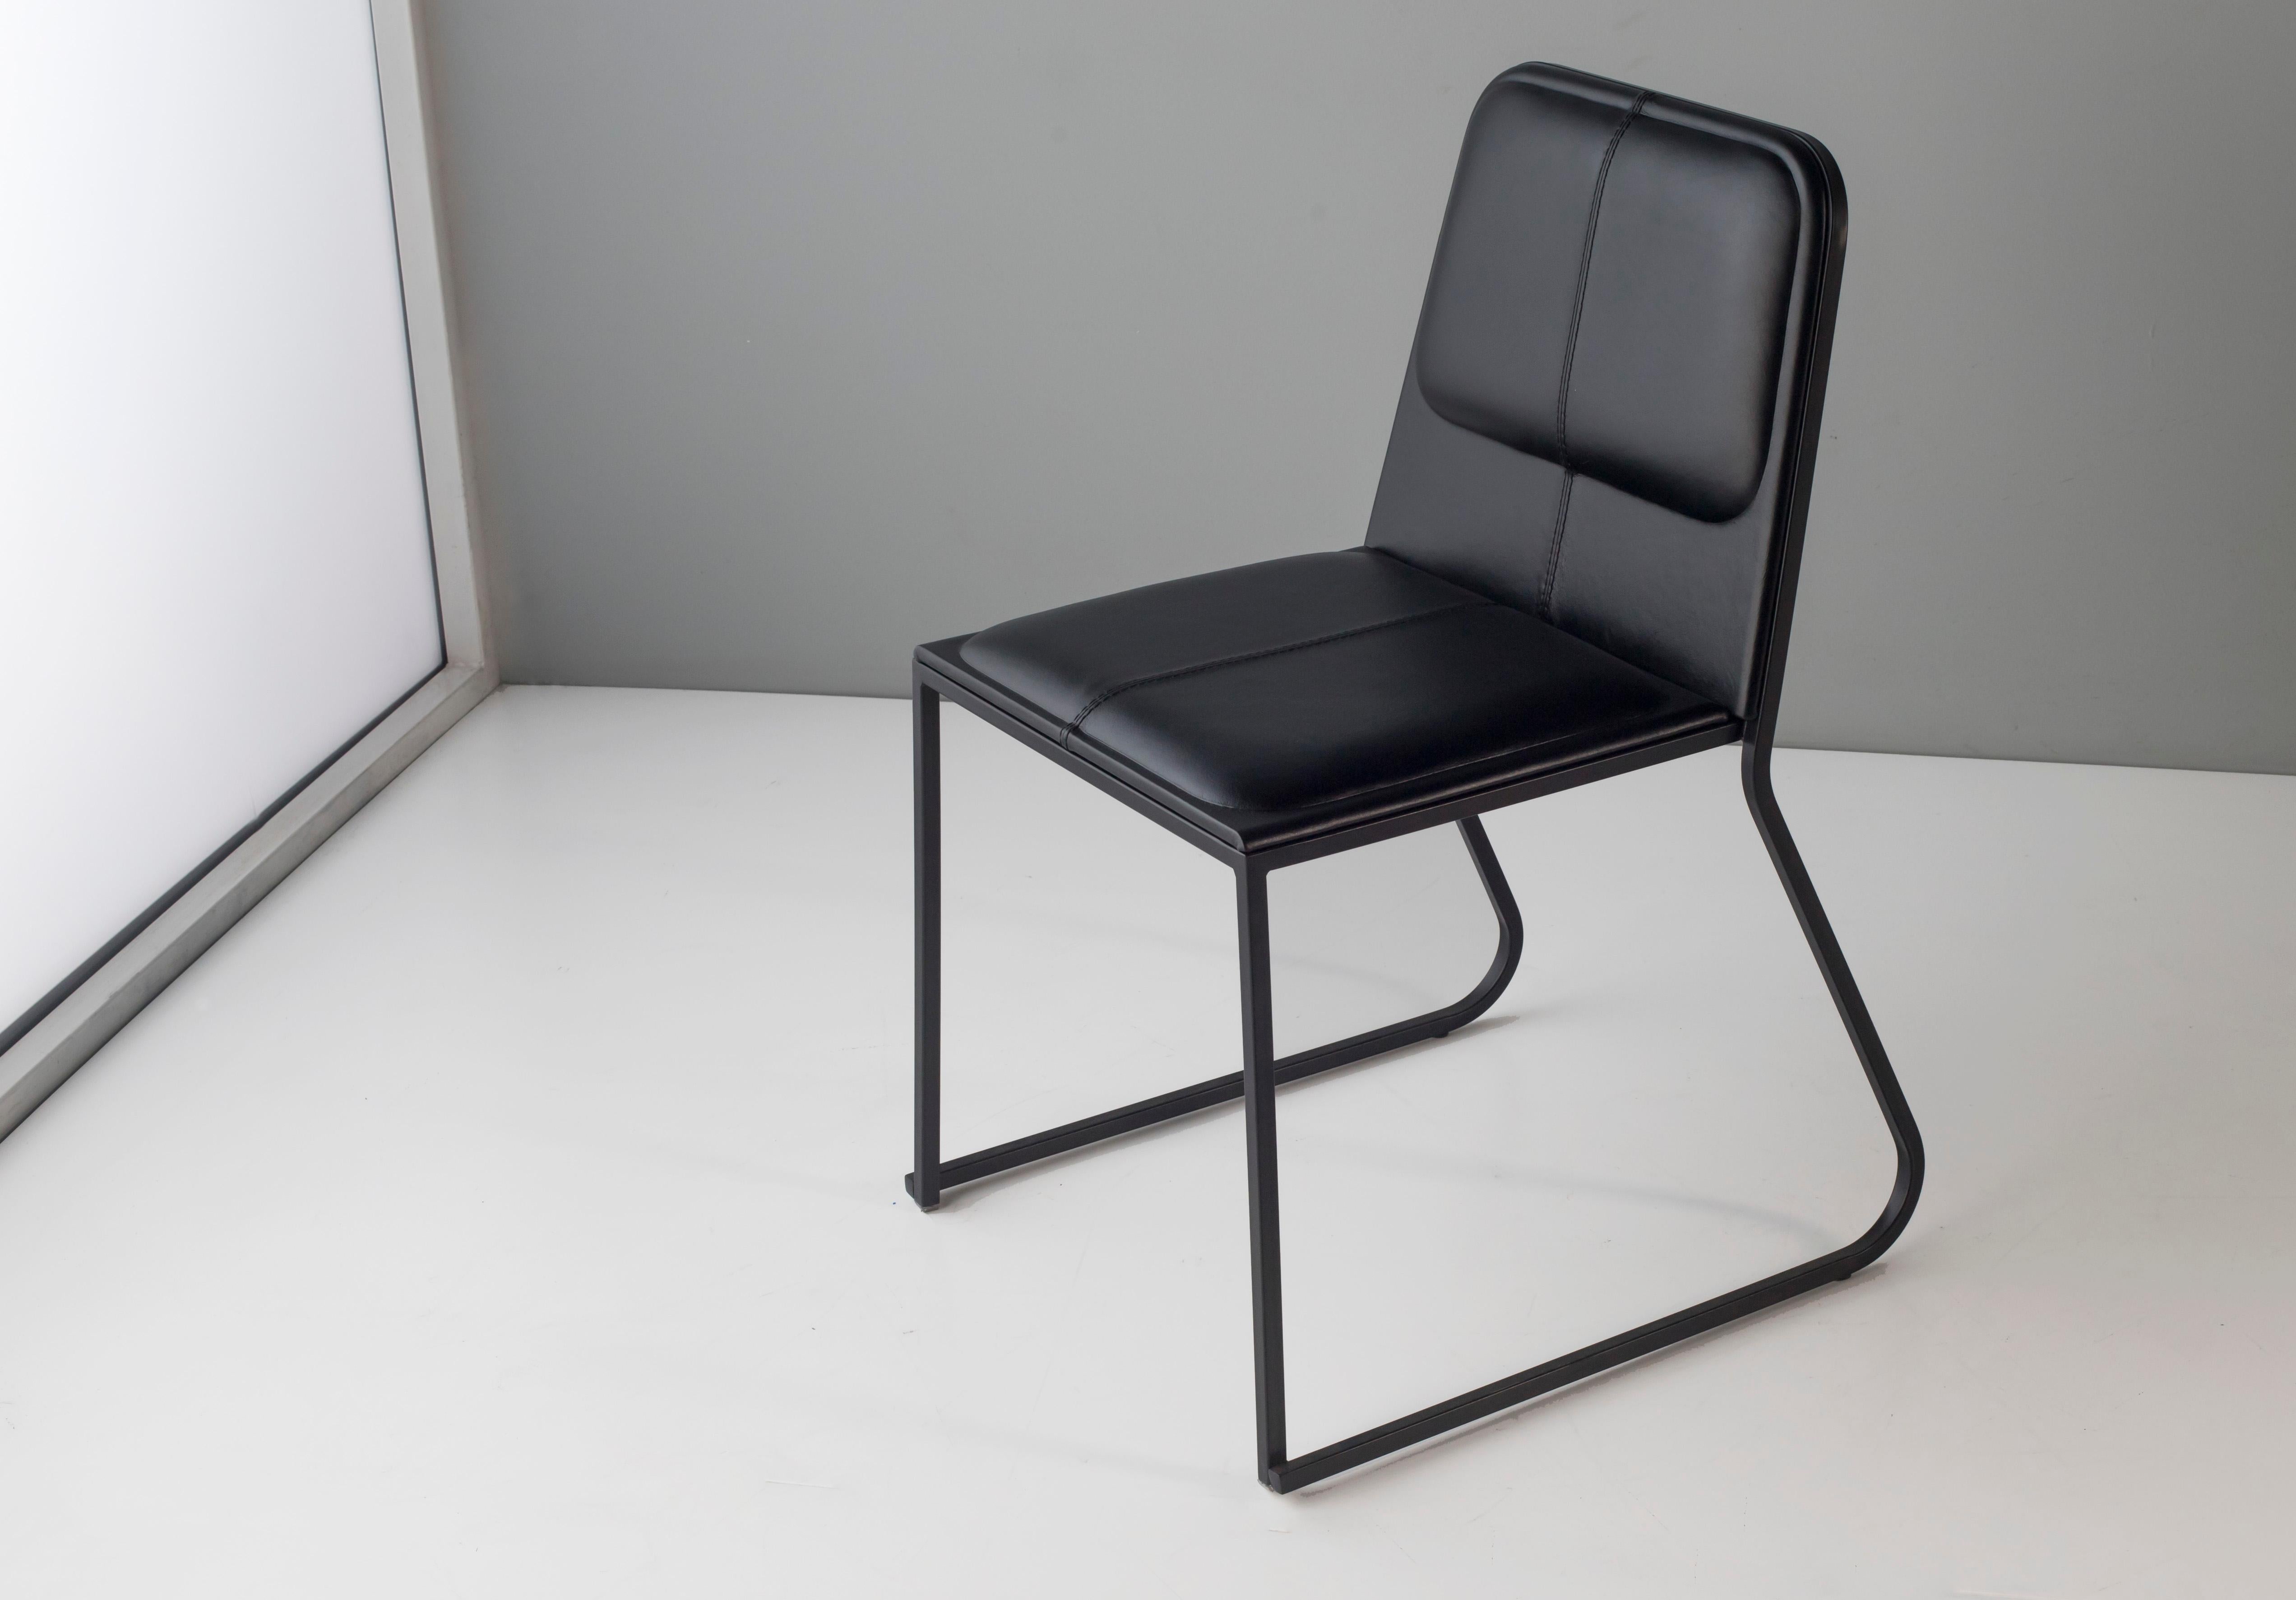 Bora-Stuhl von Doimo Brasil
Abmessungen: B 56 x T 53 x H 81 cm 
MATERIALIEN: Metallstuhl mit gepolstertem Sitz.


Mit der Absicht, guten Geschmack und Persönlichkeit zu vermitteln, entschlüsselt Doimo Trends und folgt der Entwicklung des Menschen